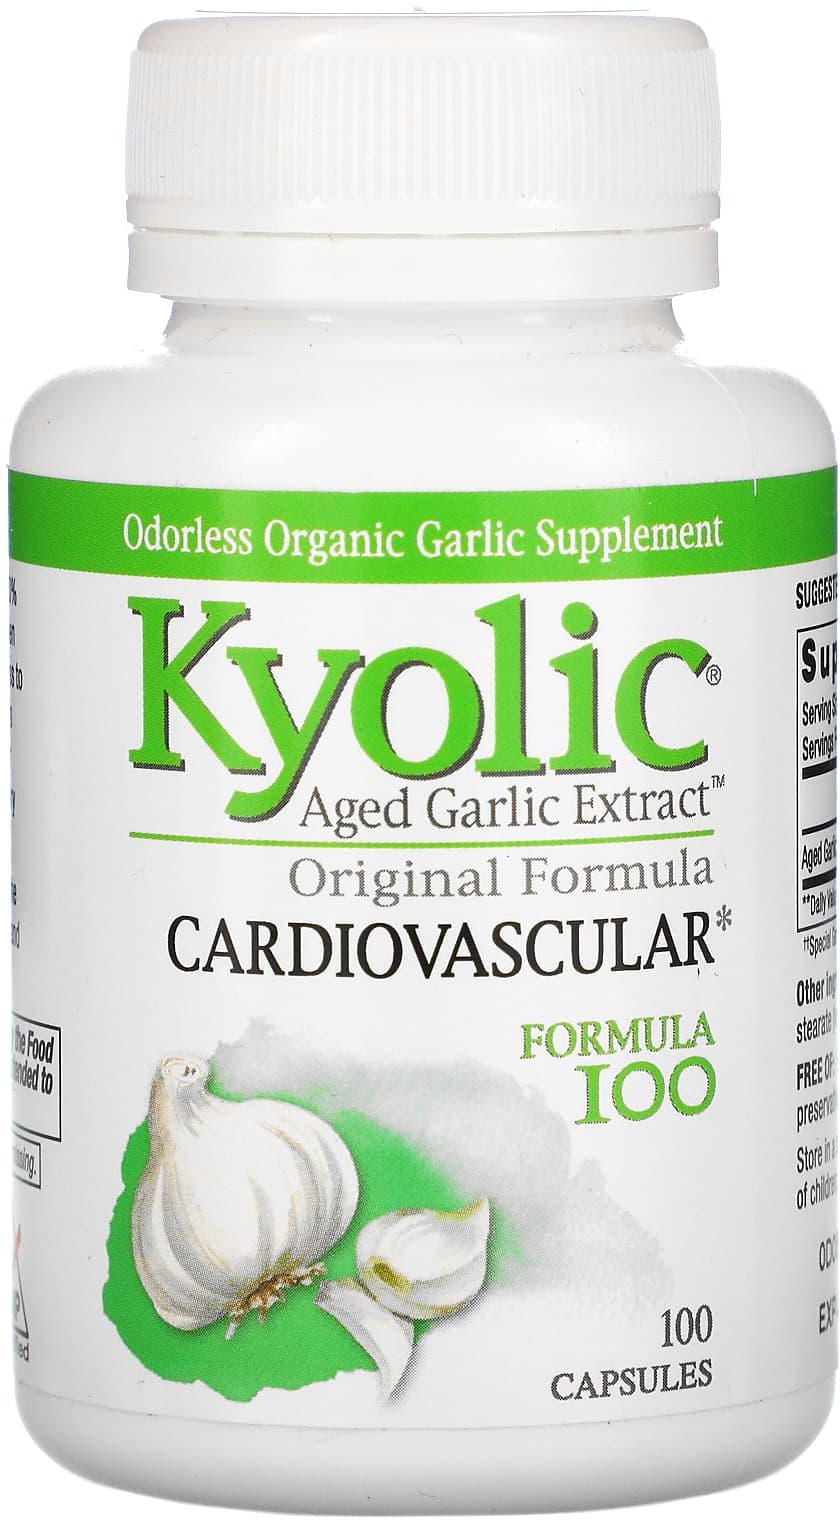 كيوليك‏, Aged Garlic Extract، للقلب والأوعية الدموية، تركيبة أصلية، 100 كبسولة